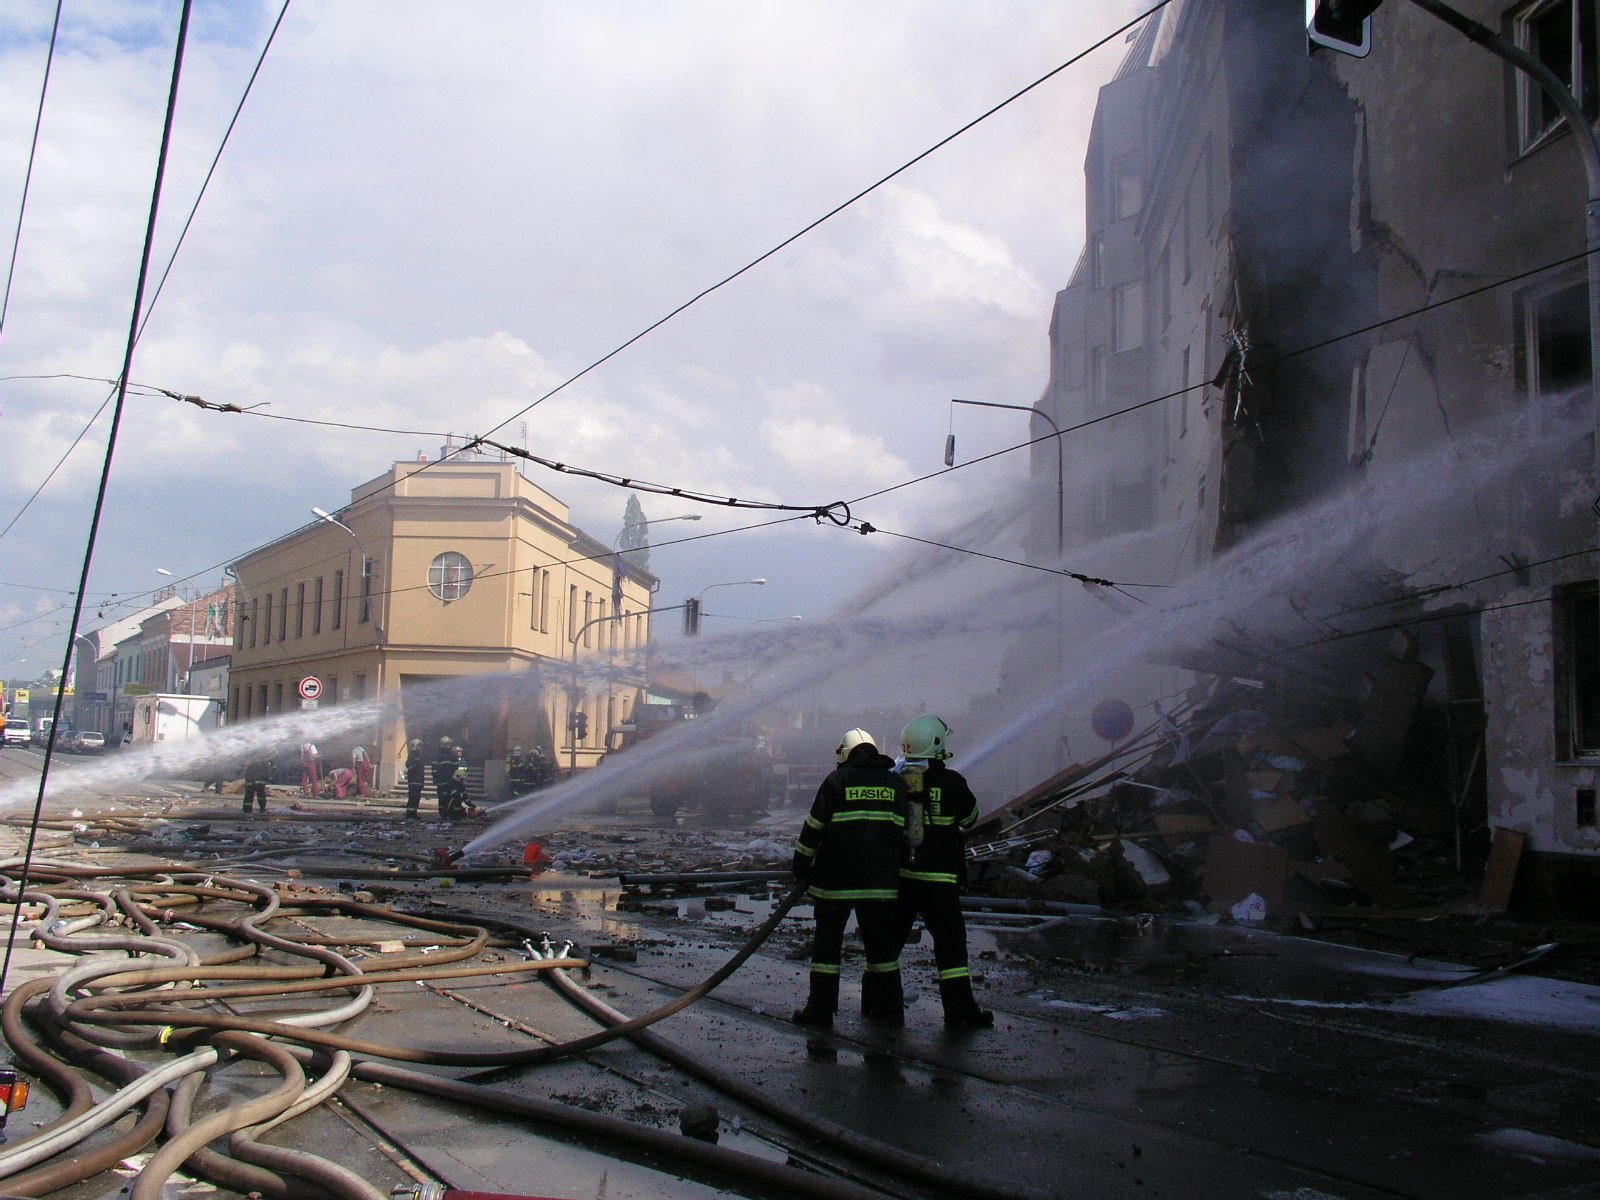 JMK_hasiči několika proudy hasí hořící dům na ulici Tržní.JPG